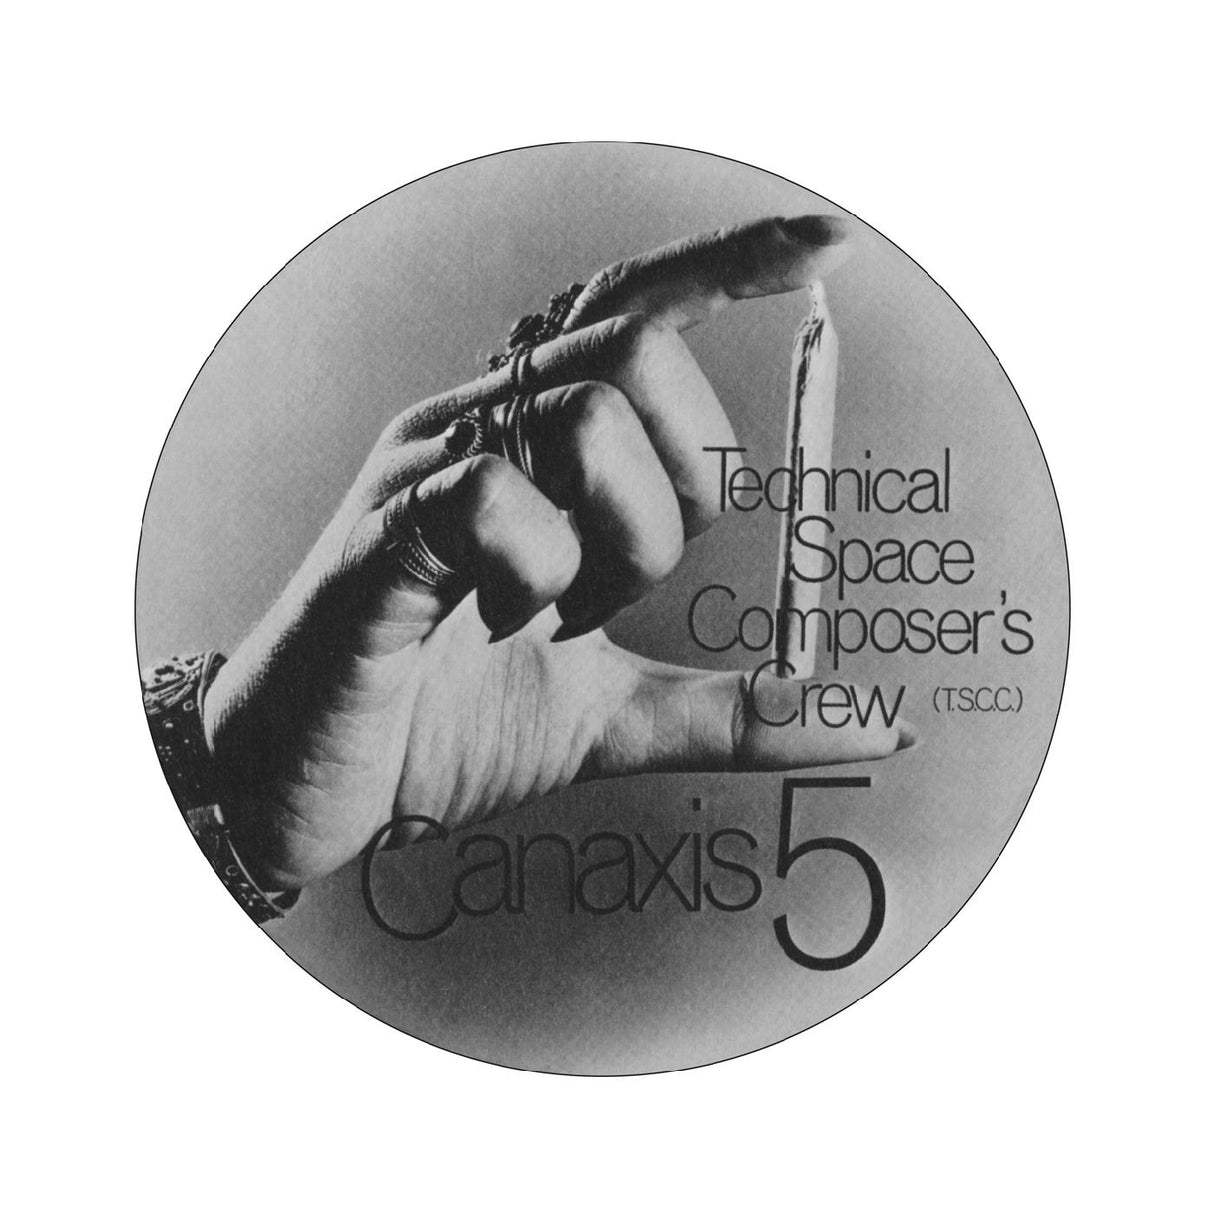 Canaxis 5 [Vinyl]